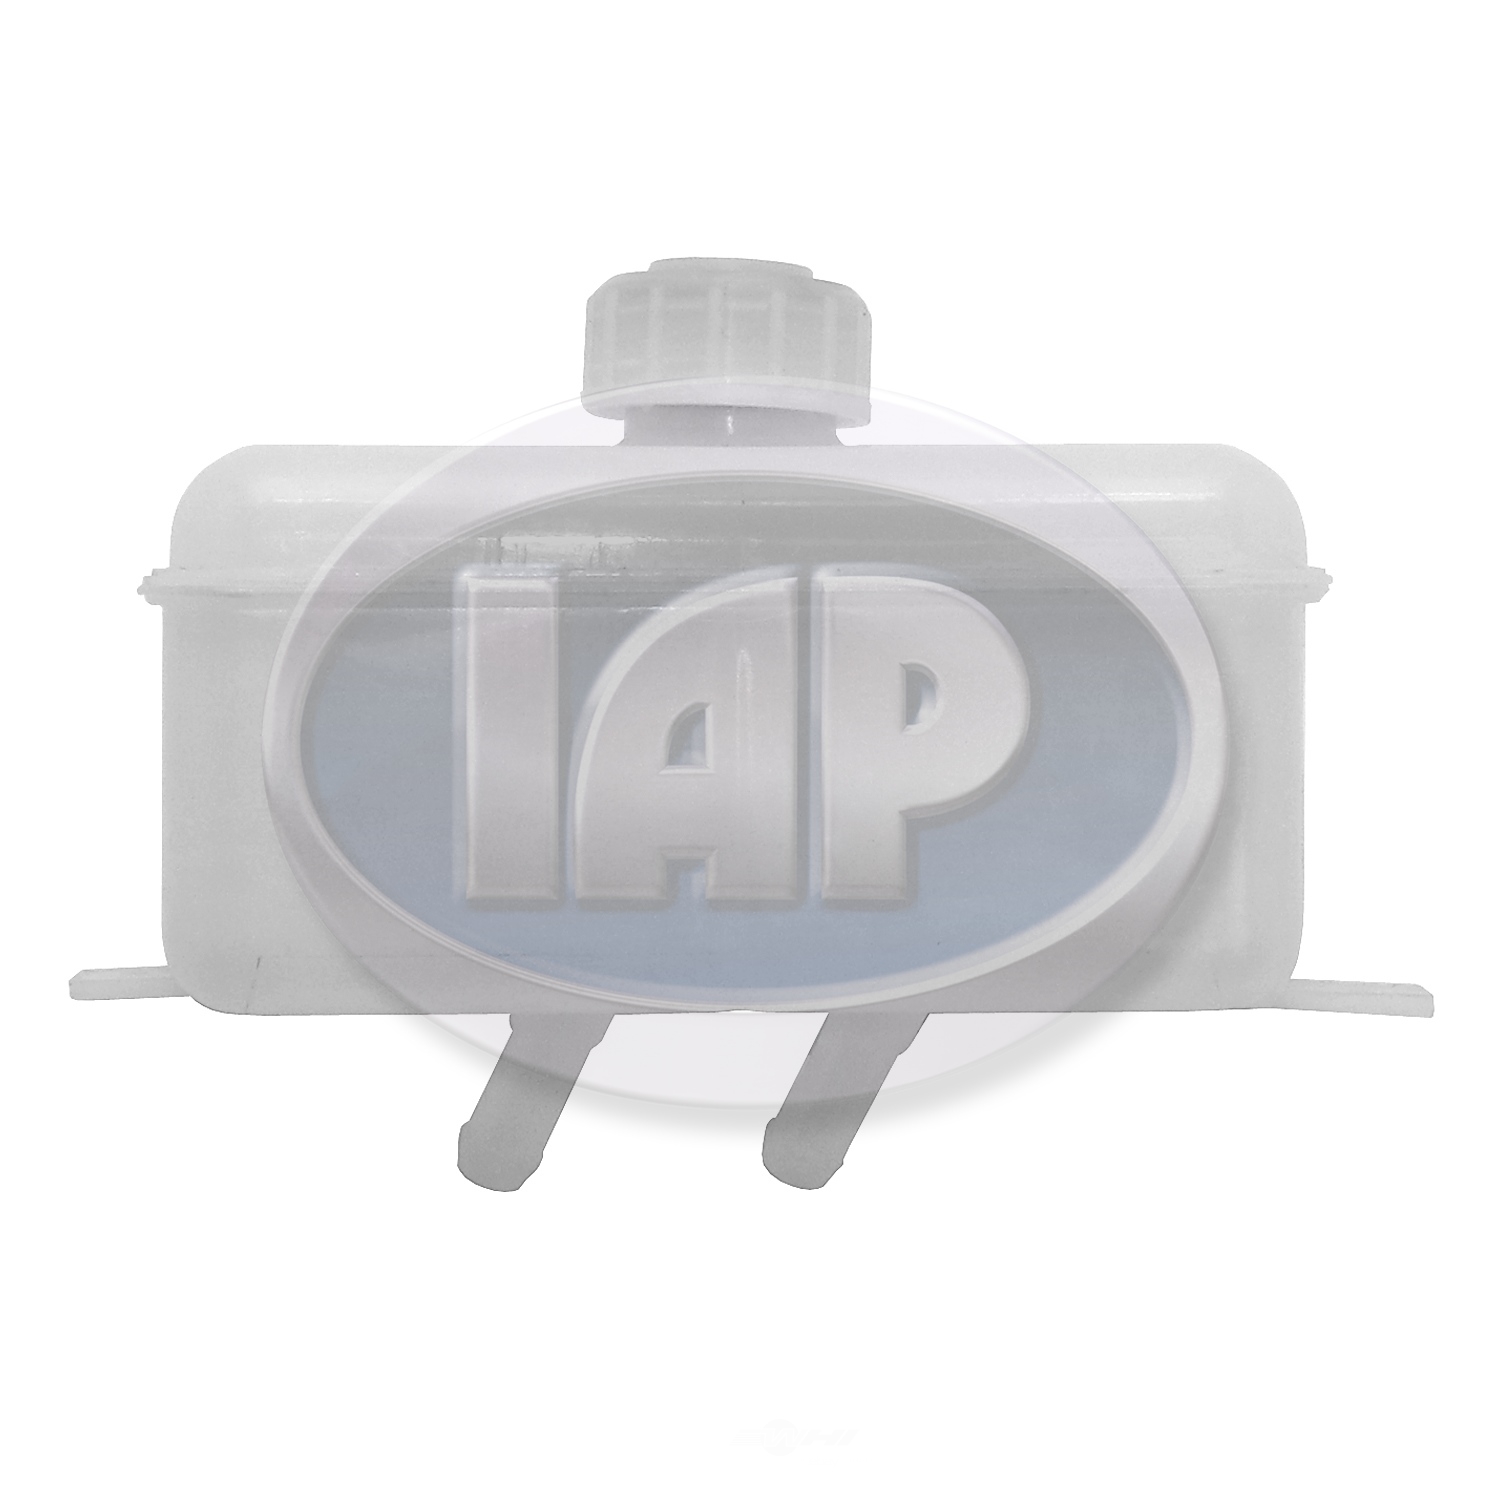 IAP/KUHLTEK MOTORWERKS - Brake Master Cylinder Reservoir - KMS 113611301L